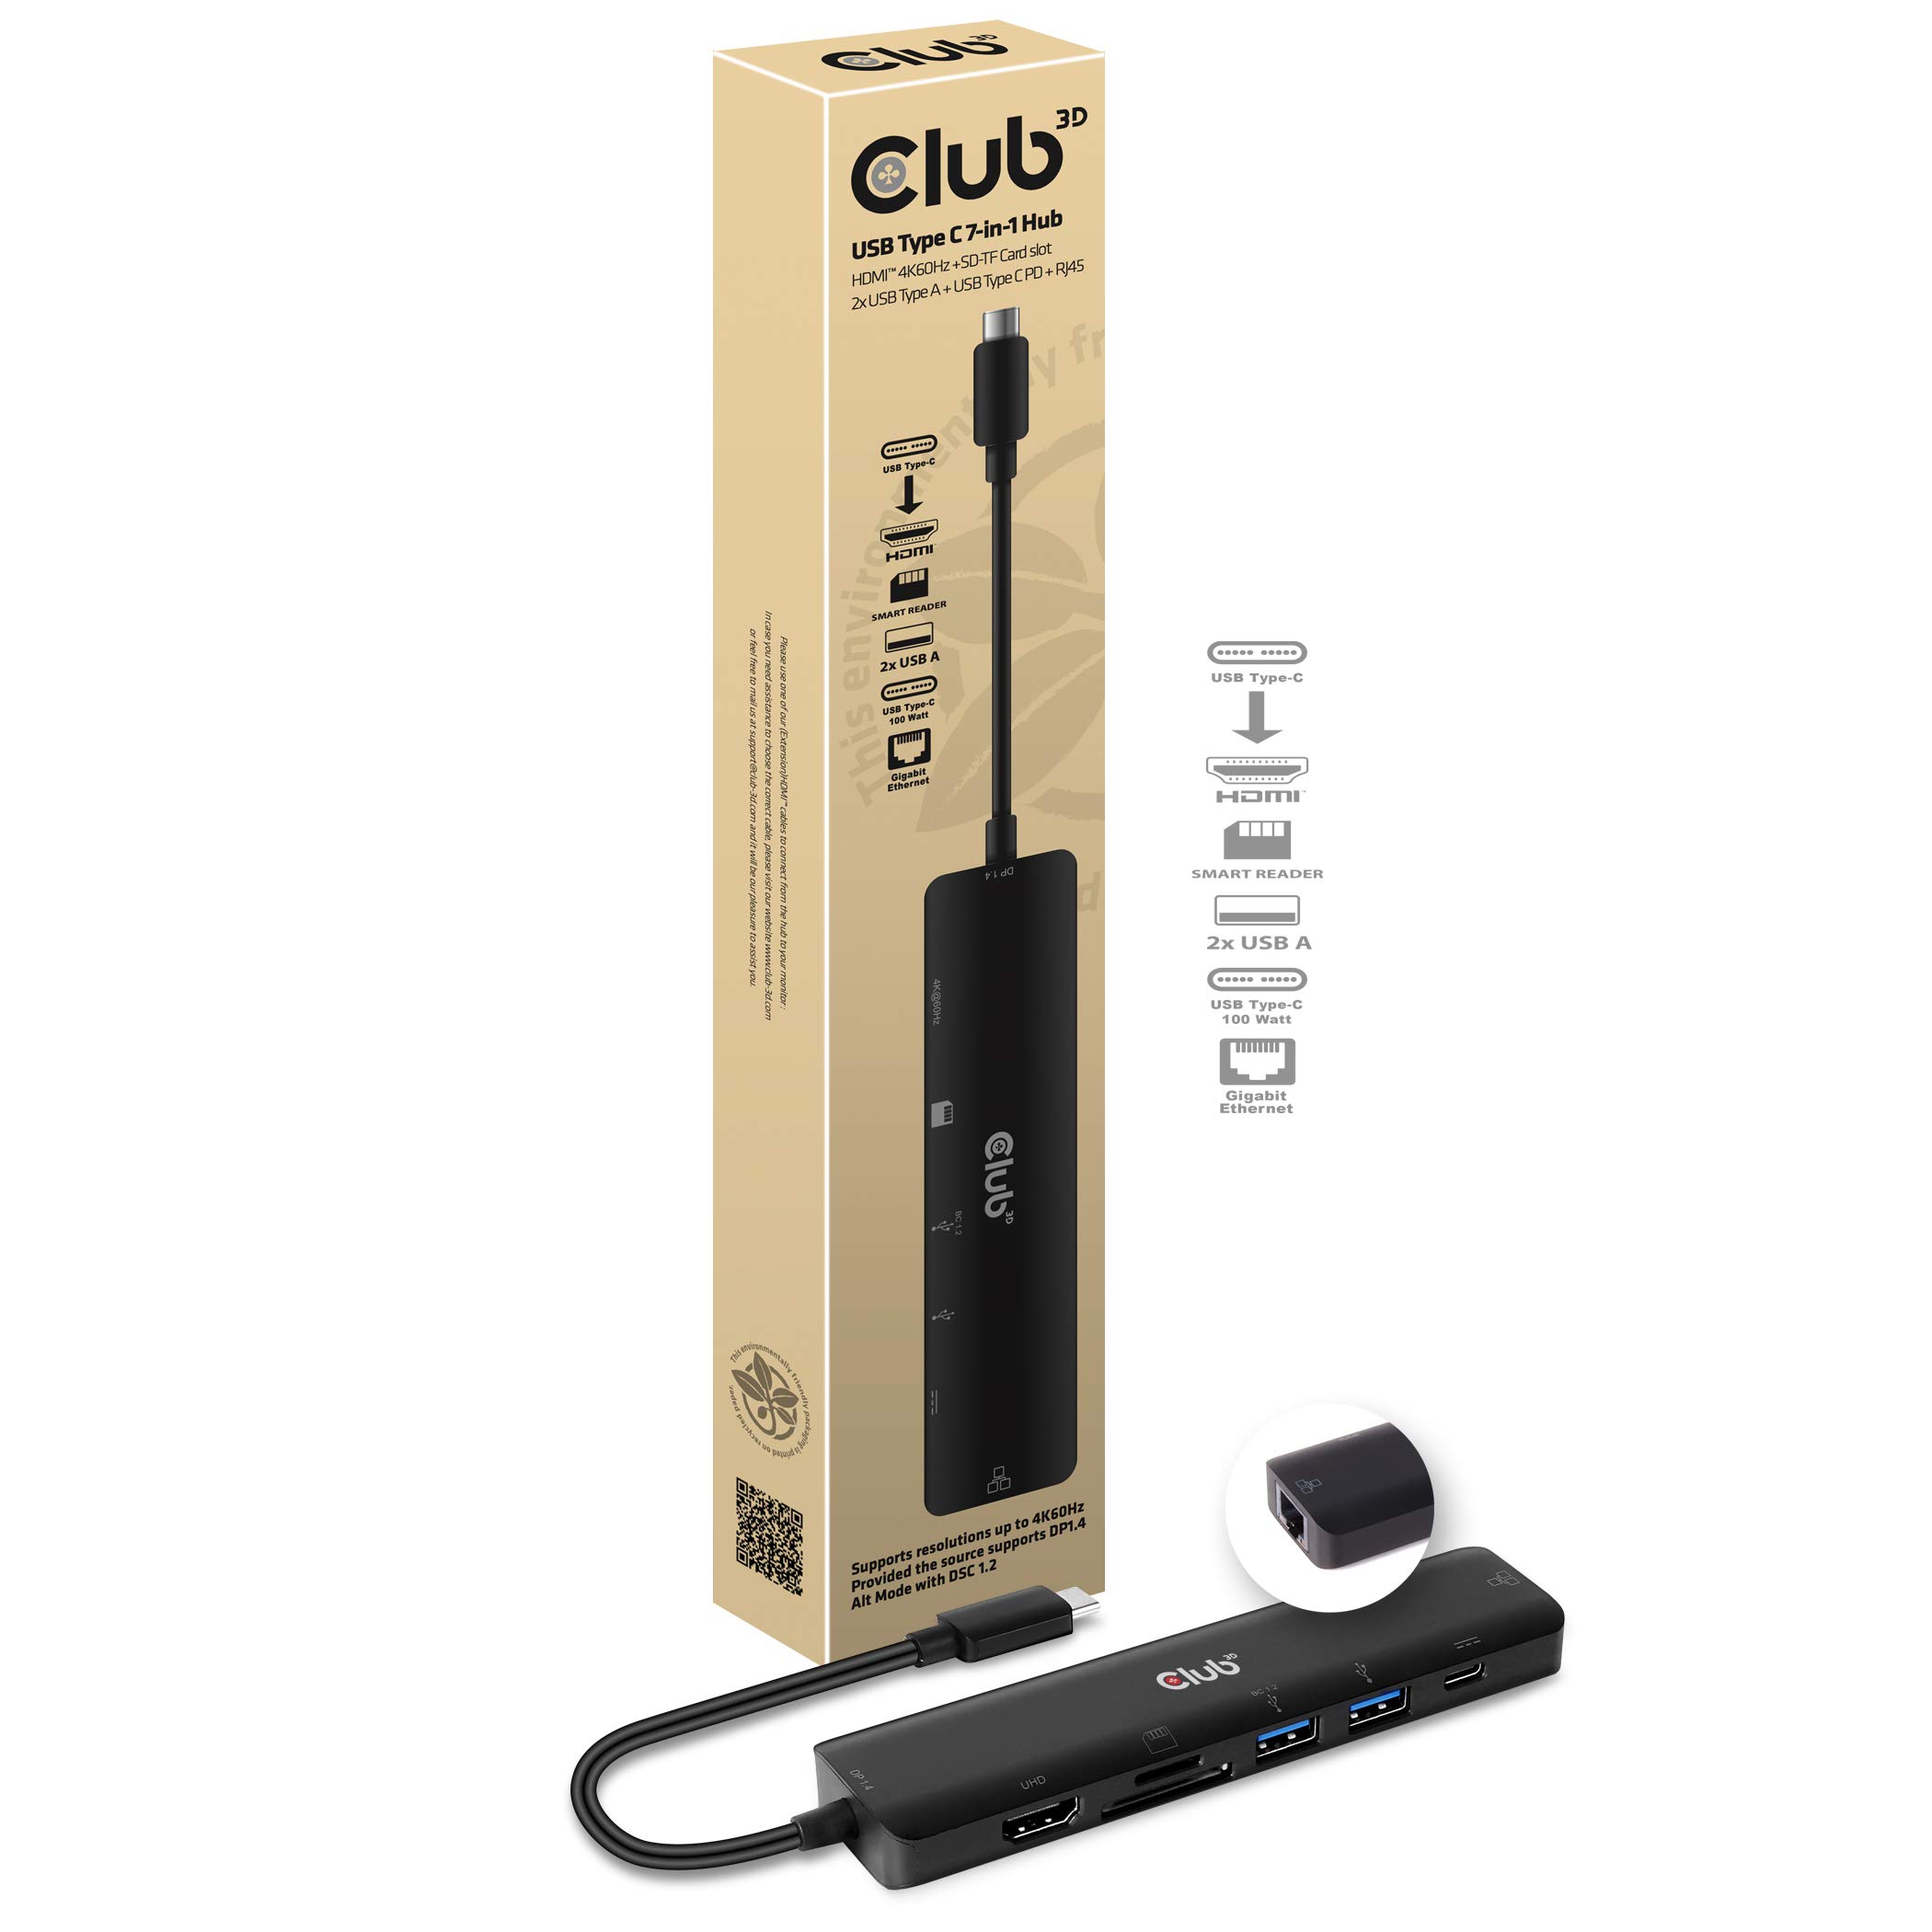 Club 3D USB Typ C 7-in-1 Hub auf HDMI 4K60Hz /SD-TF Kartenslot 2X USB Typ A/USB Typ C PD / RJ45, CSV-1592